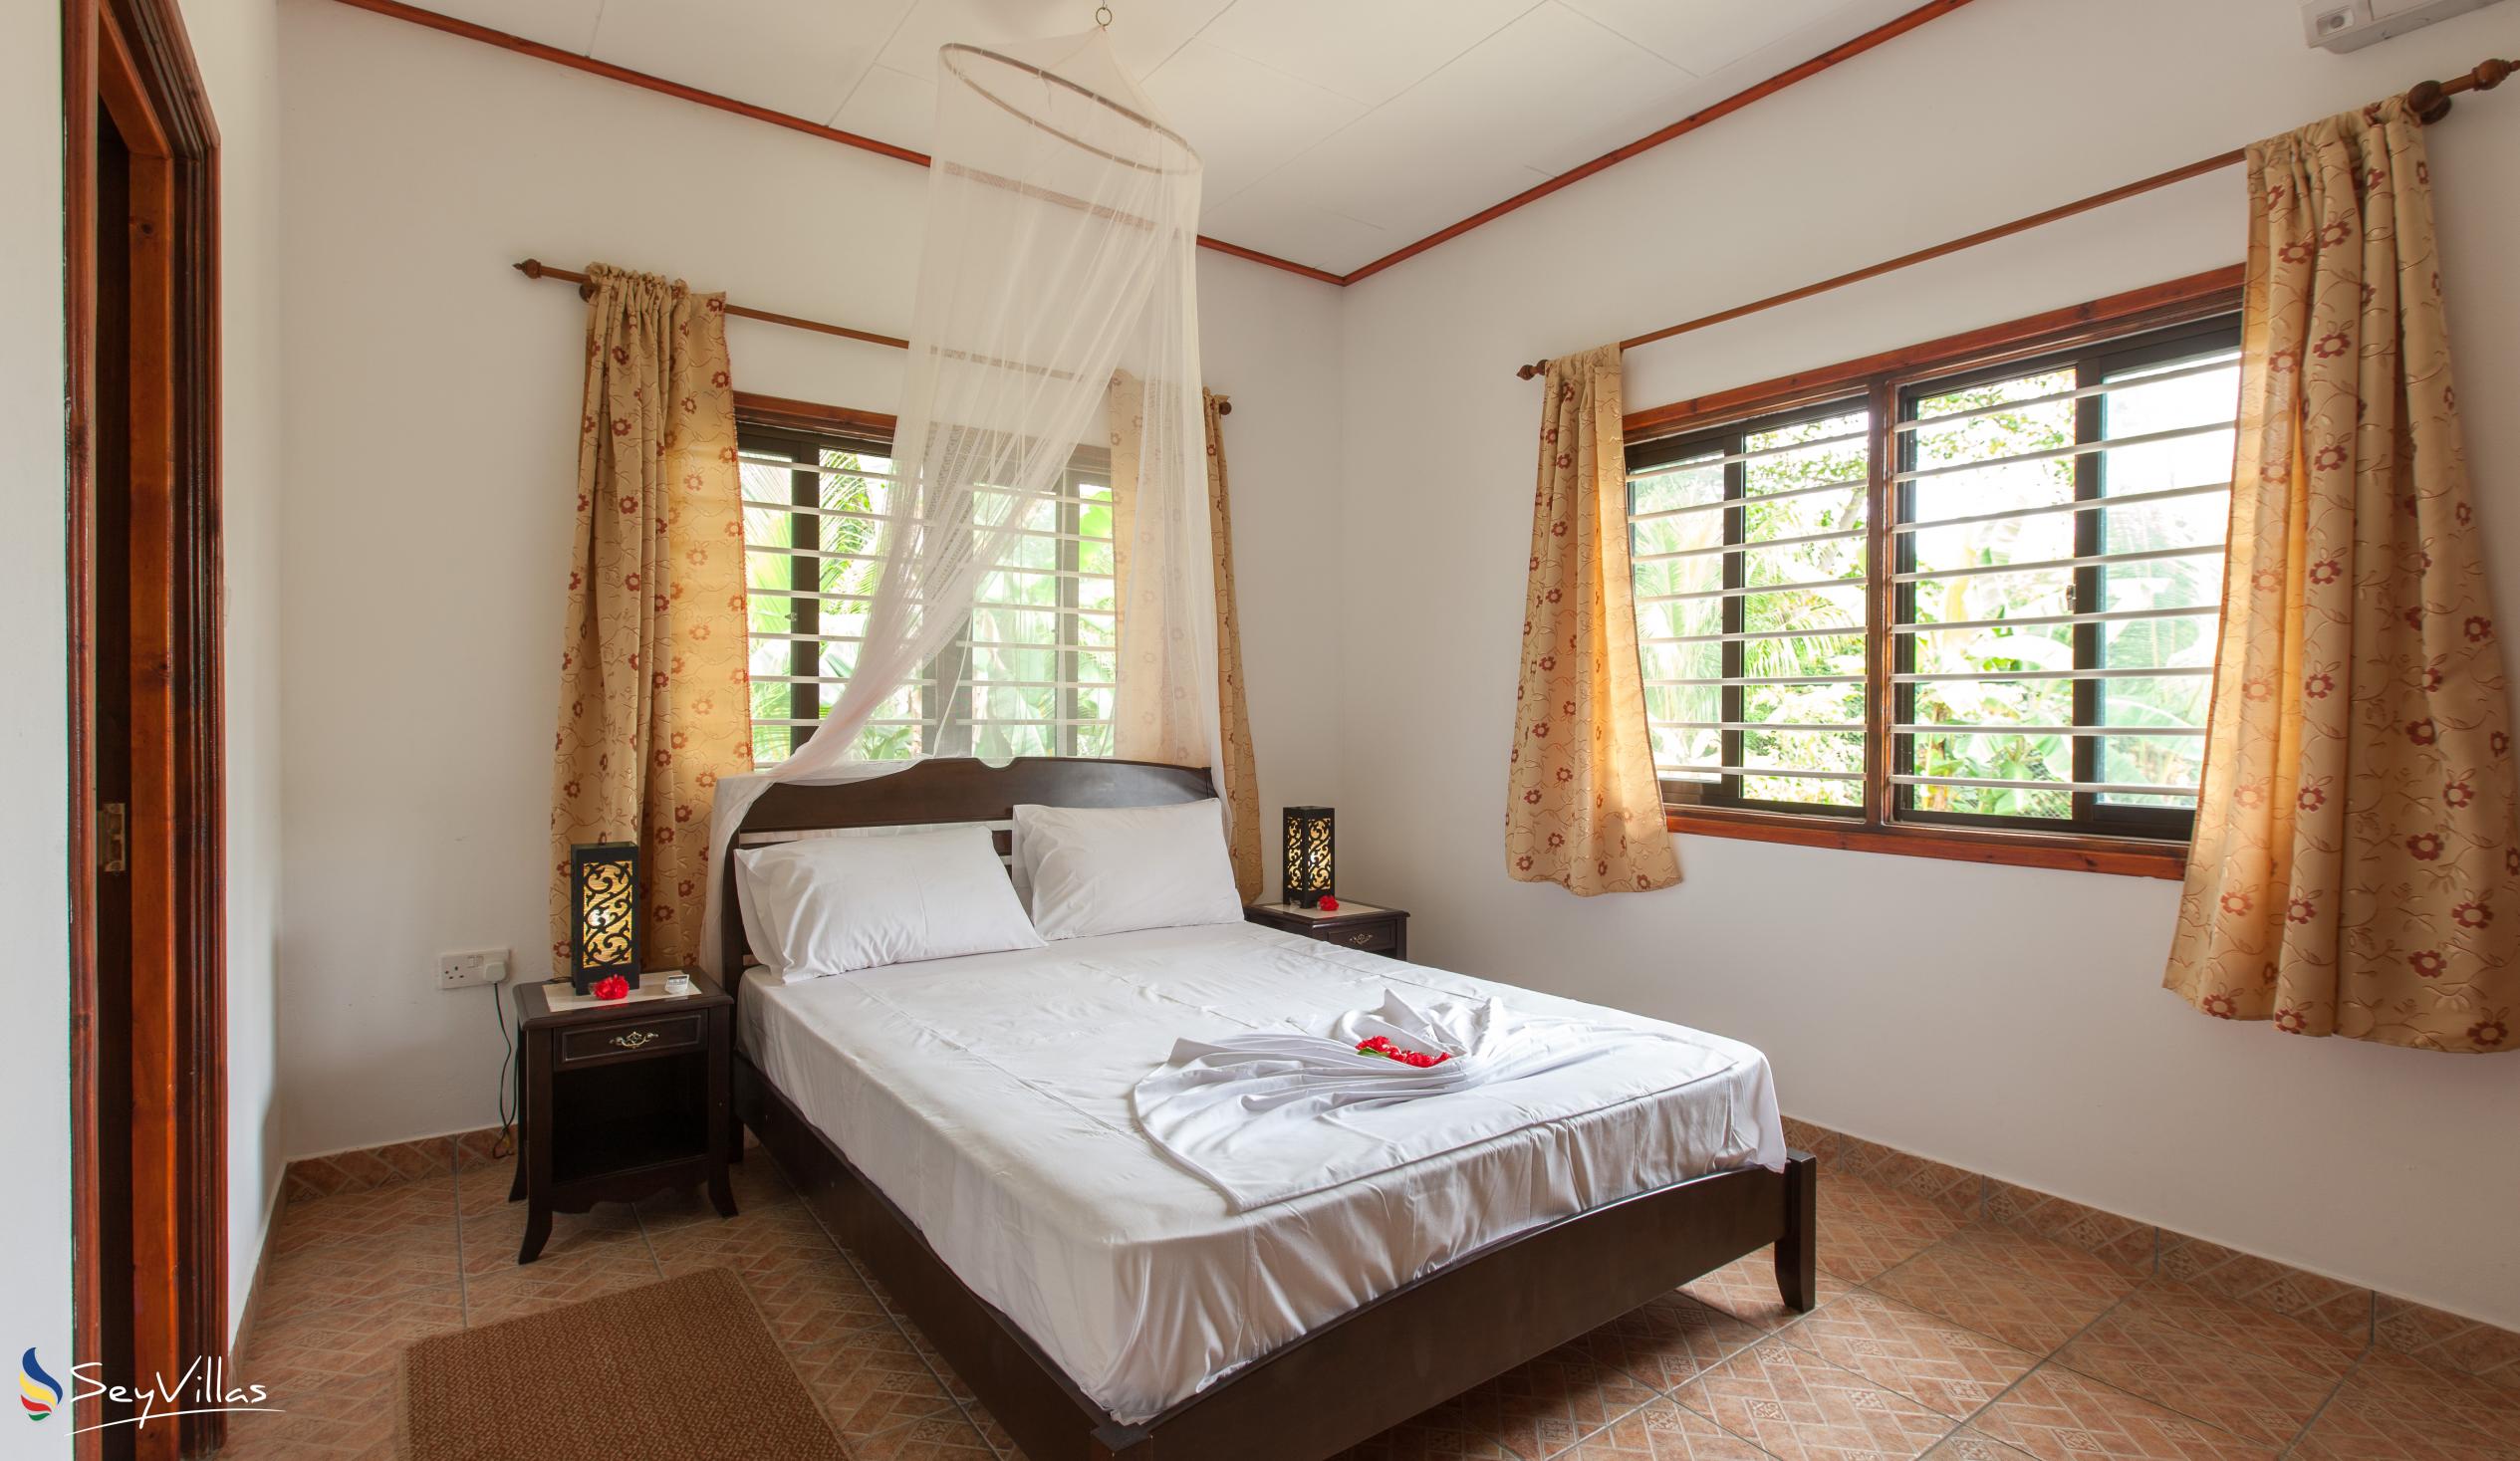 Foto 34: Zerof Self Catering  Apartments - Bungalow à 2 chambres - La Digue (Seychelles)